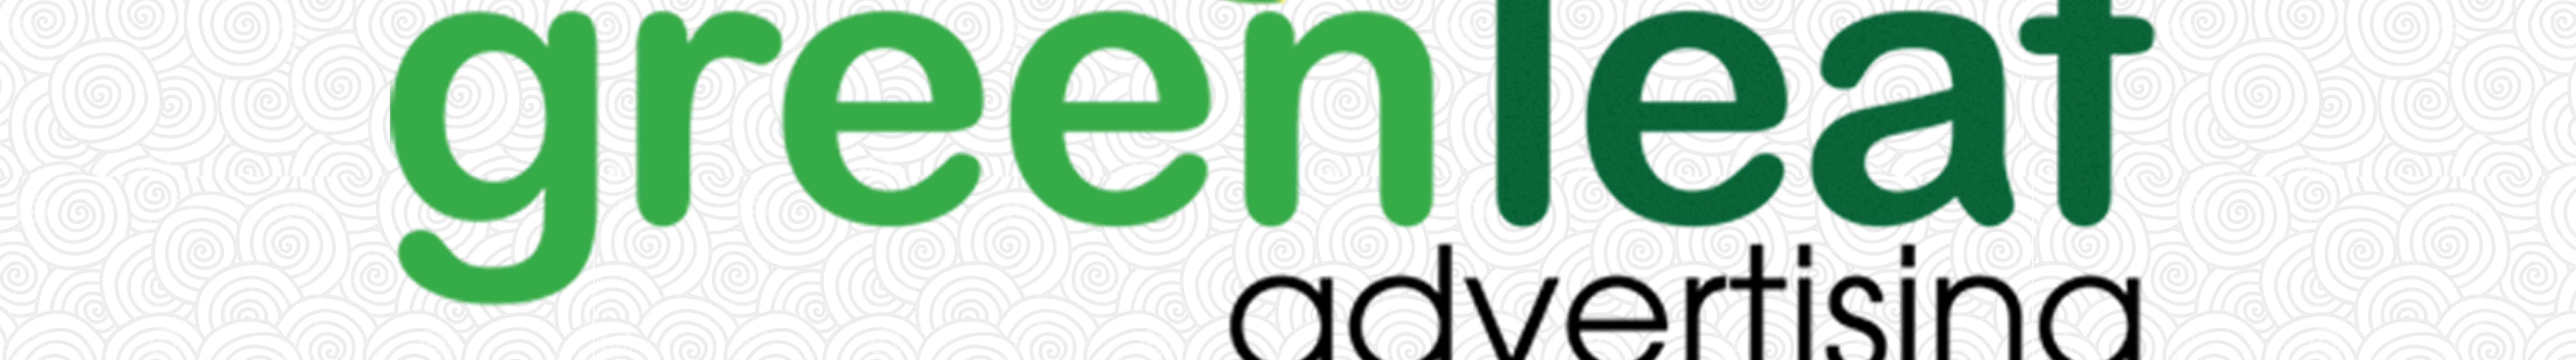 Green Leaf_ckd's profile banner